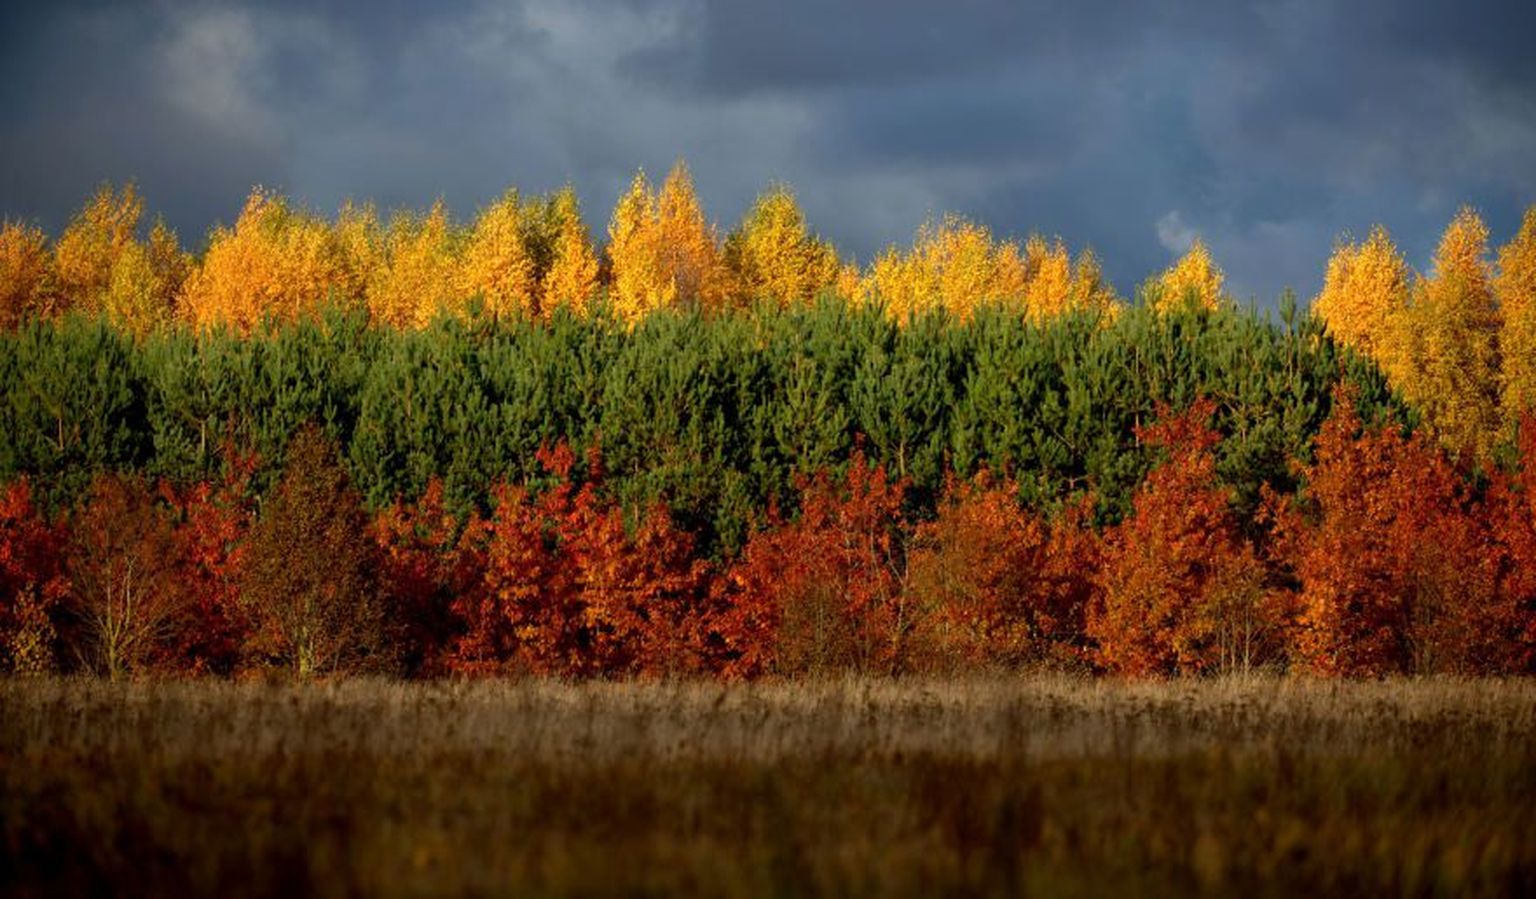 Leedu lipu värvides mets.